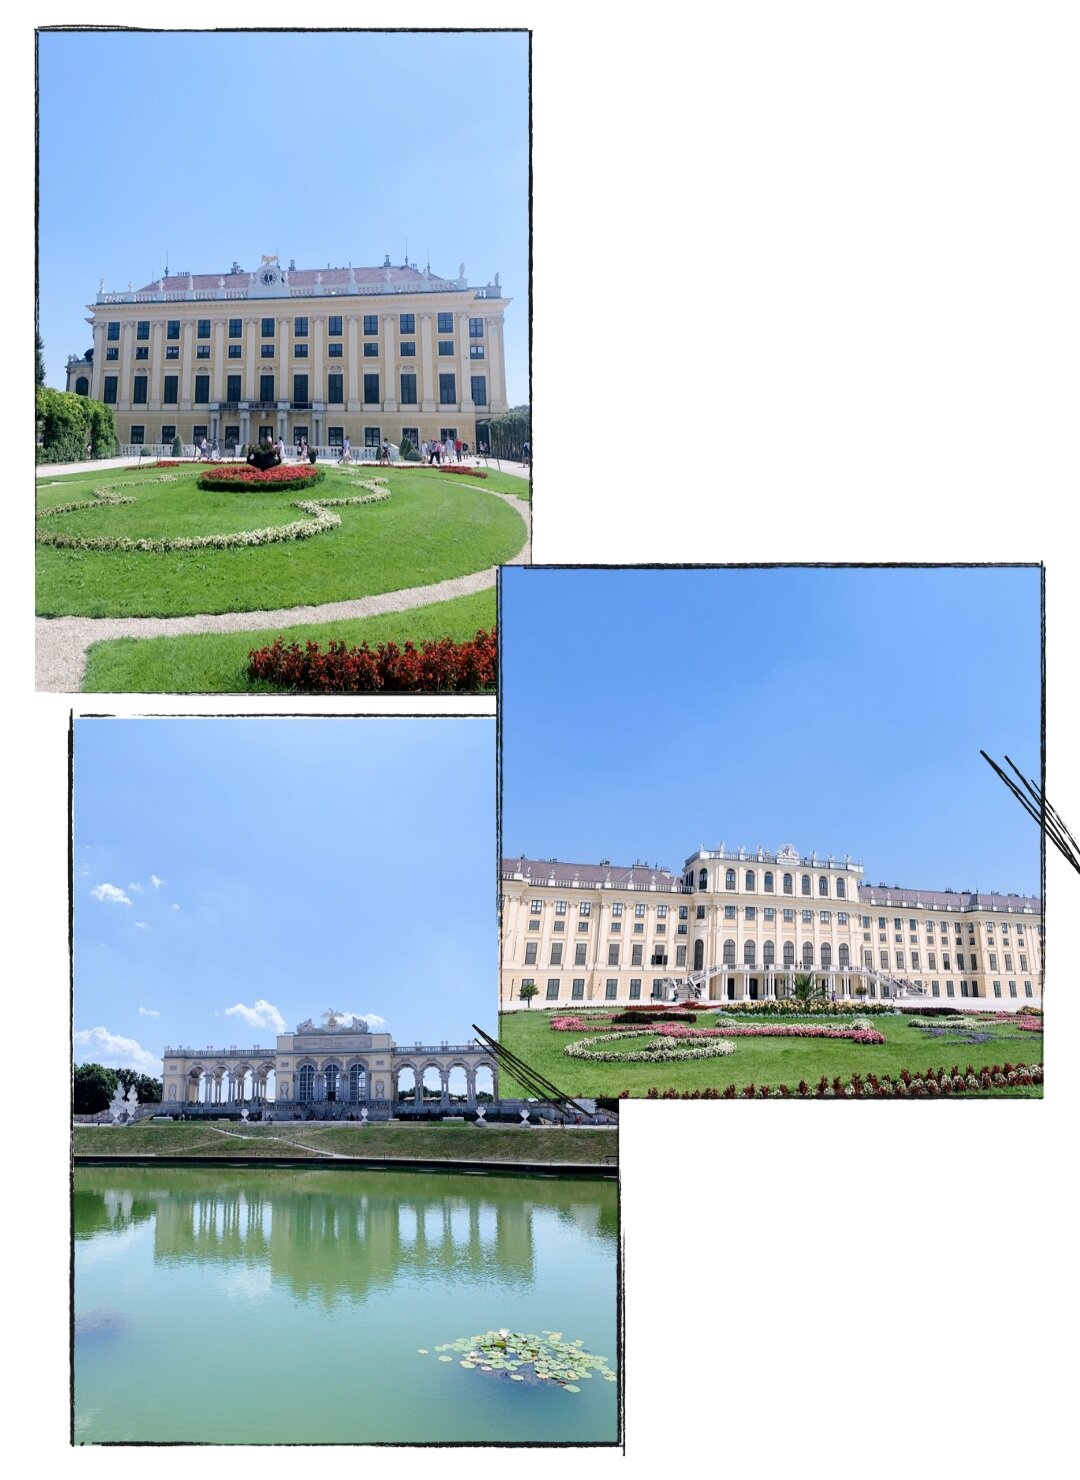 Schönbrunn Palace.